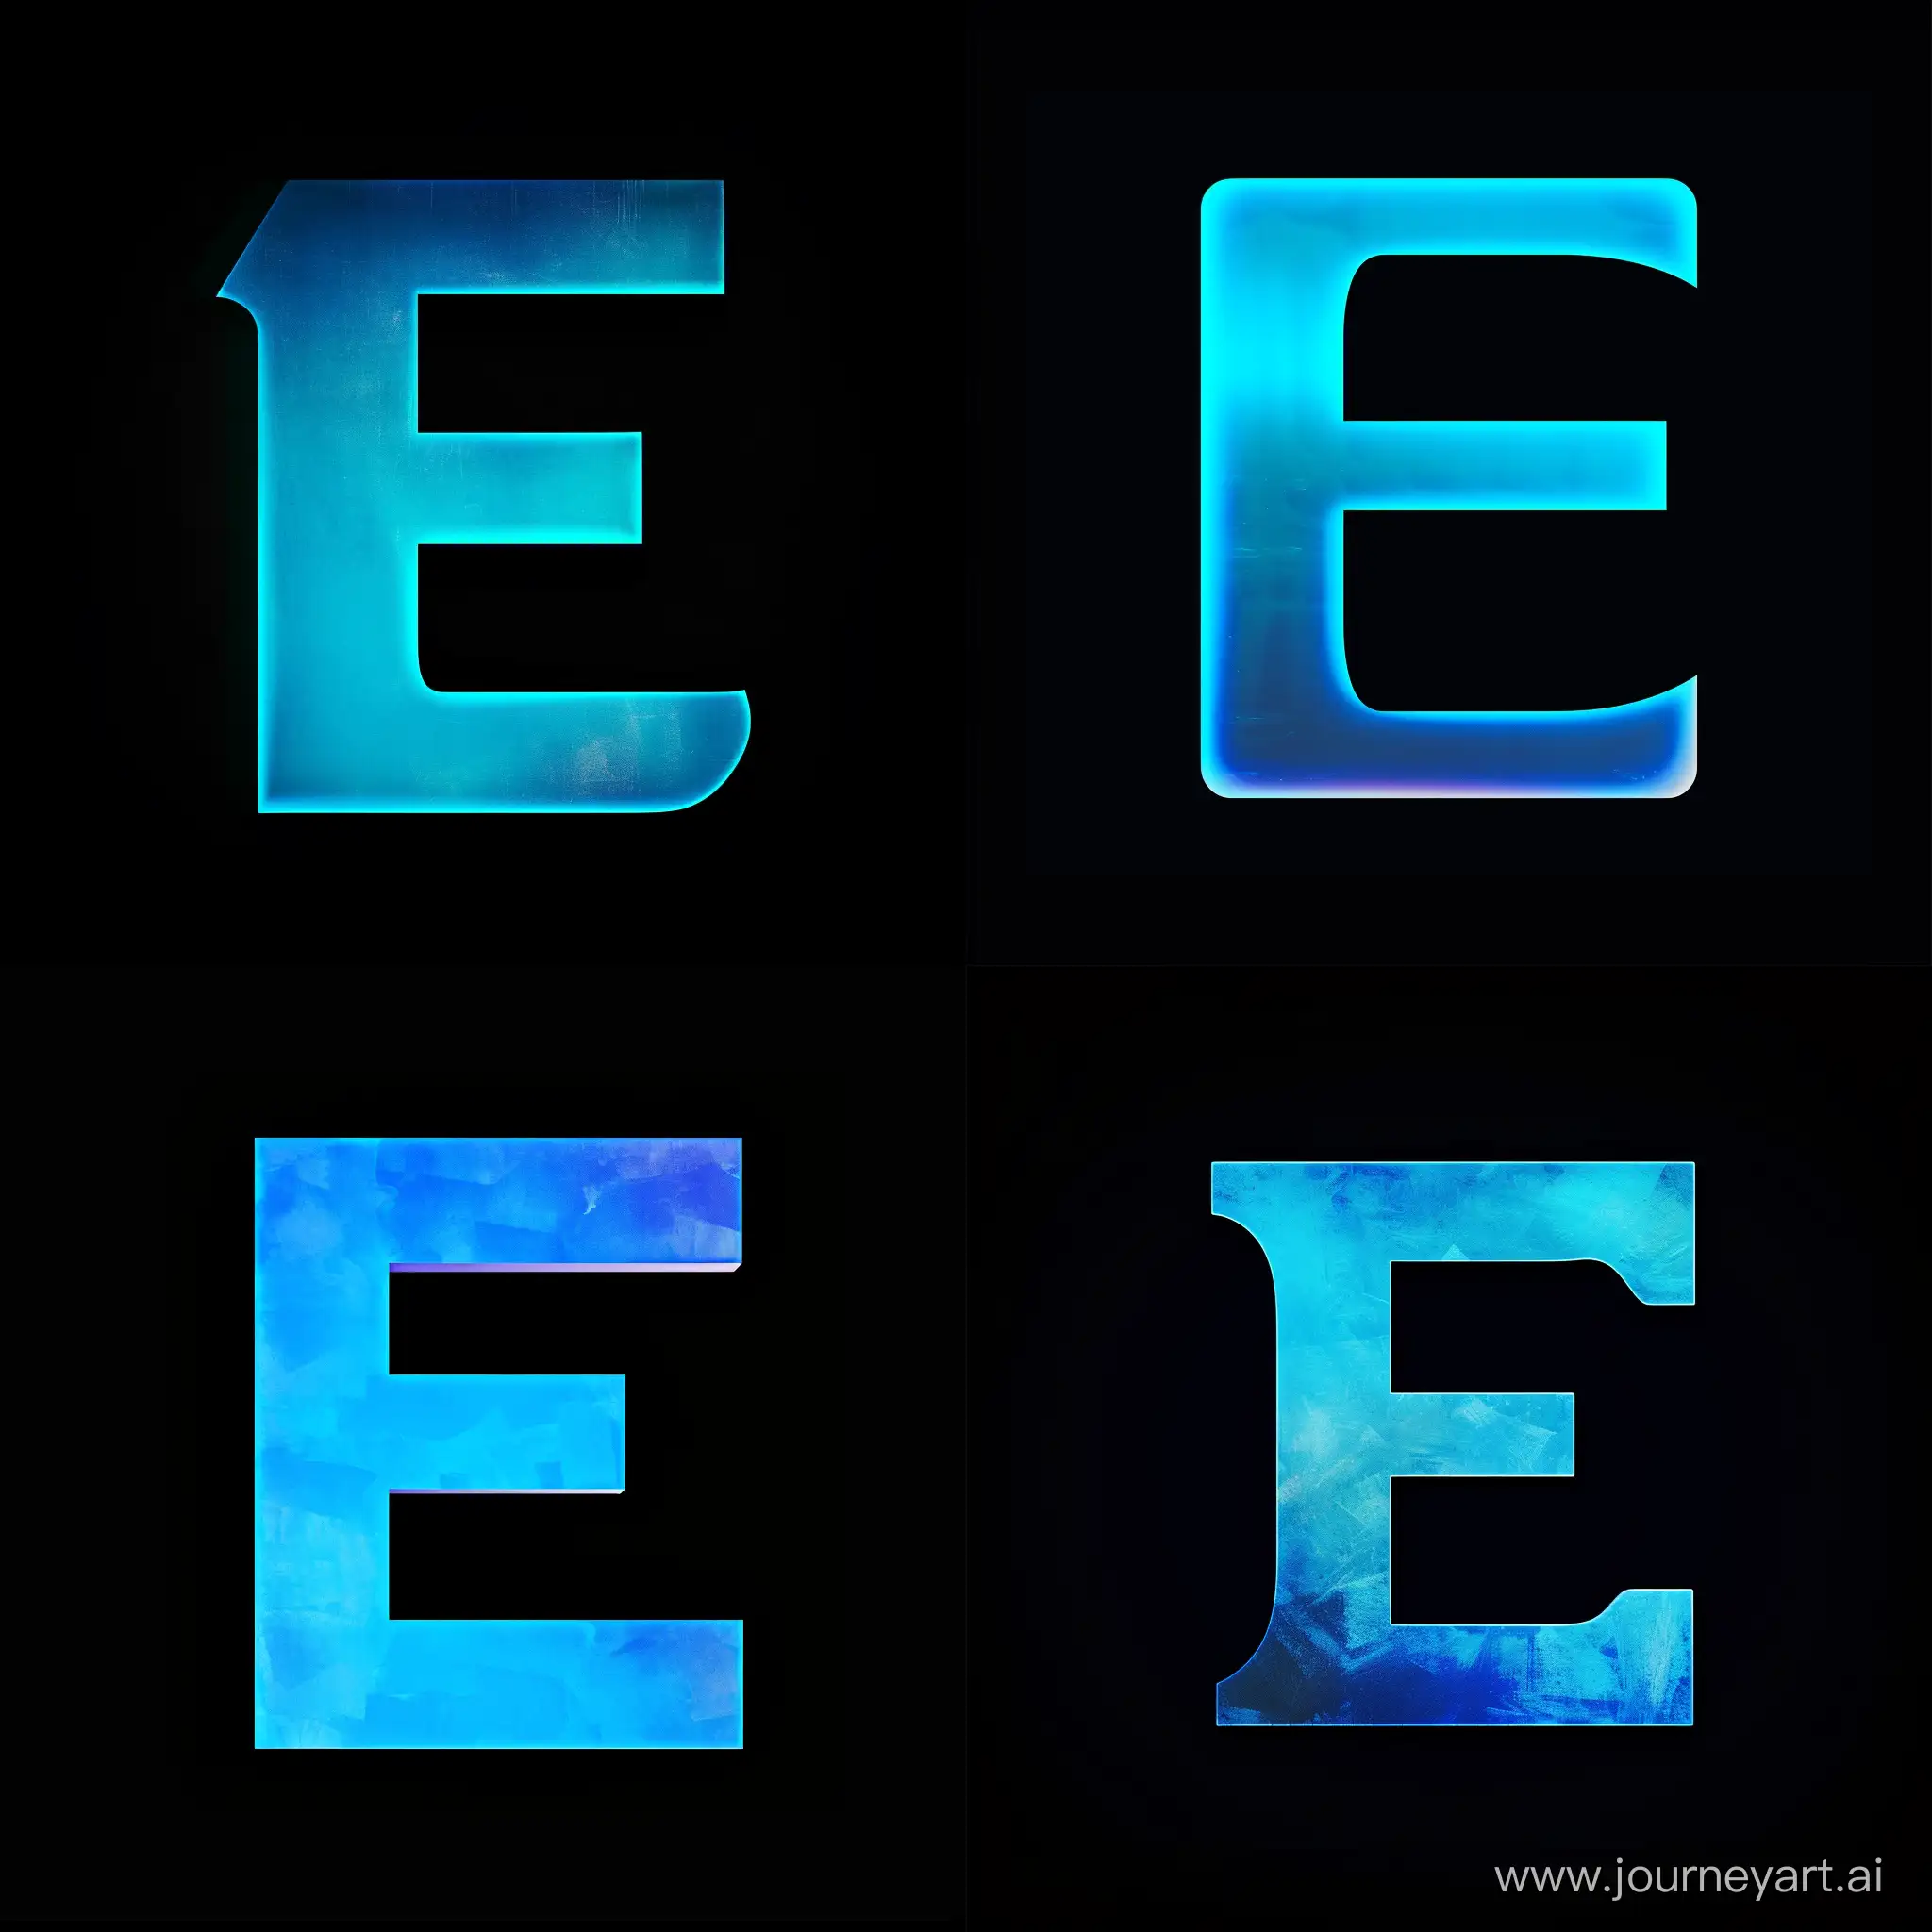 А теперь сгенерируй букву "Е", только в синем градиенте на черном фоне